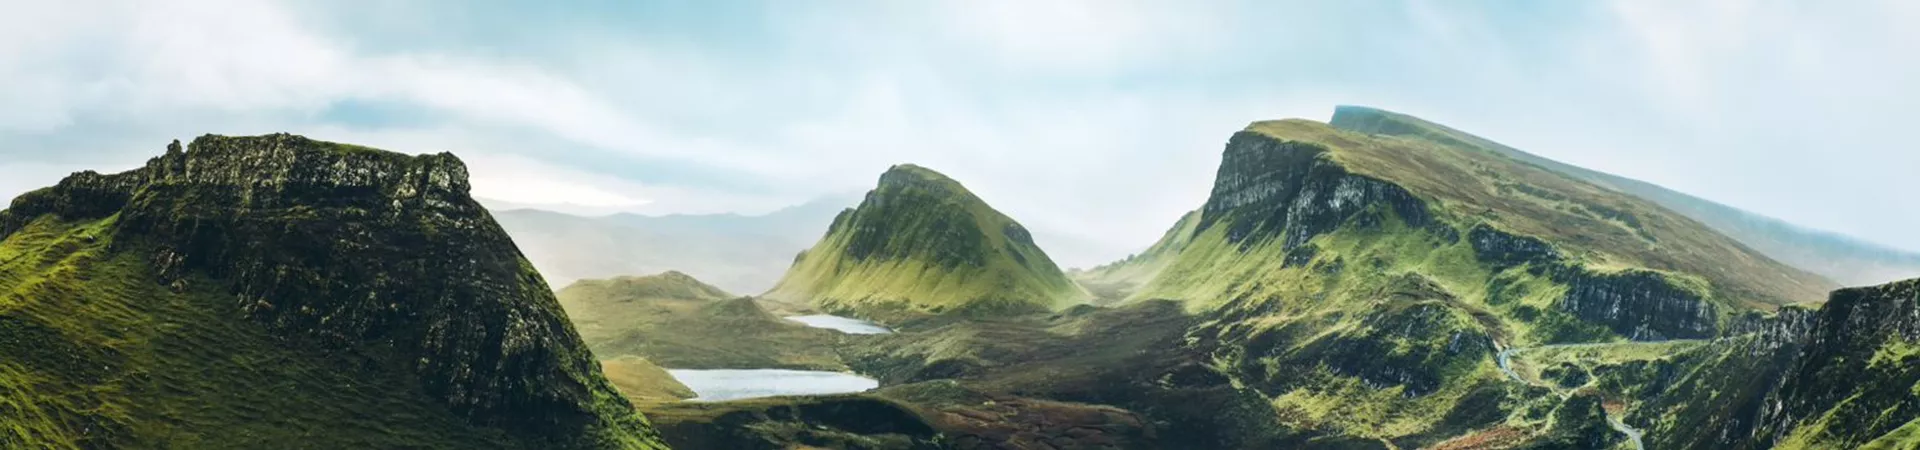 Beautiful Scottish mountains.